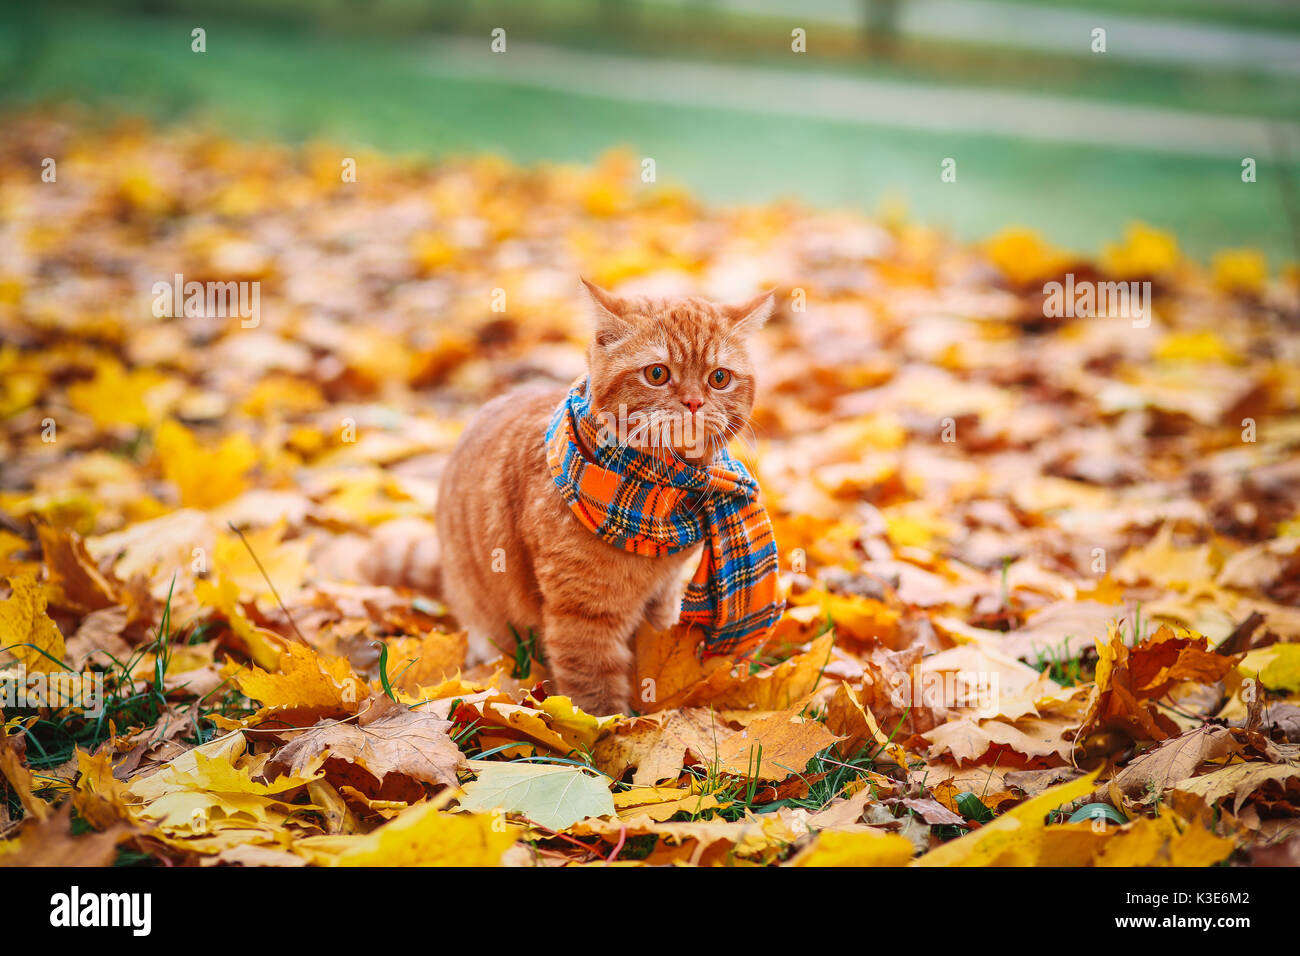 Котик в шарфике осенью